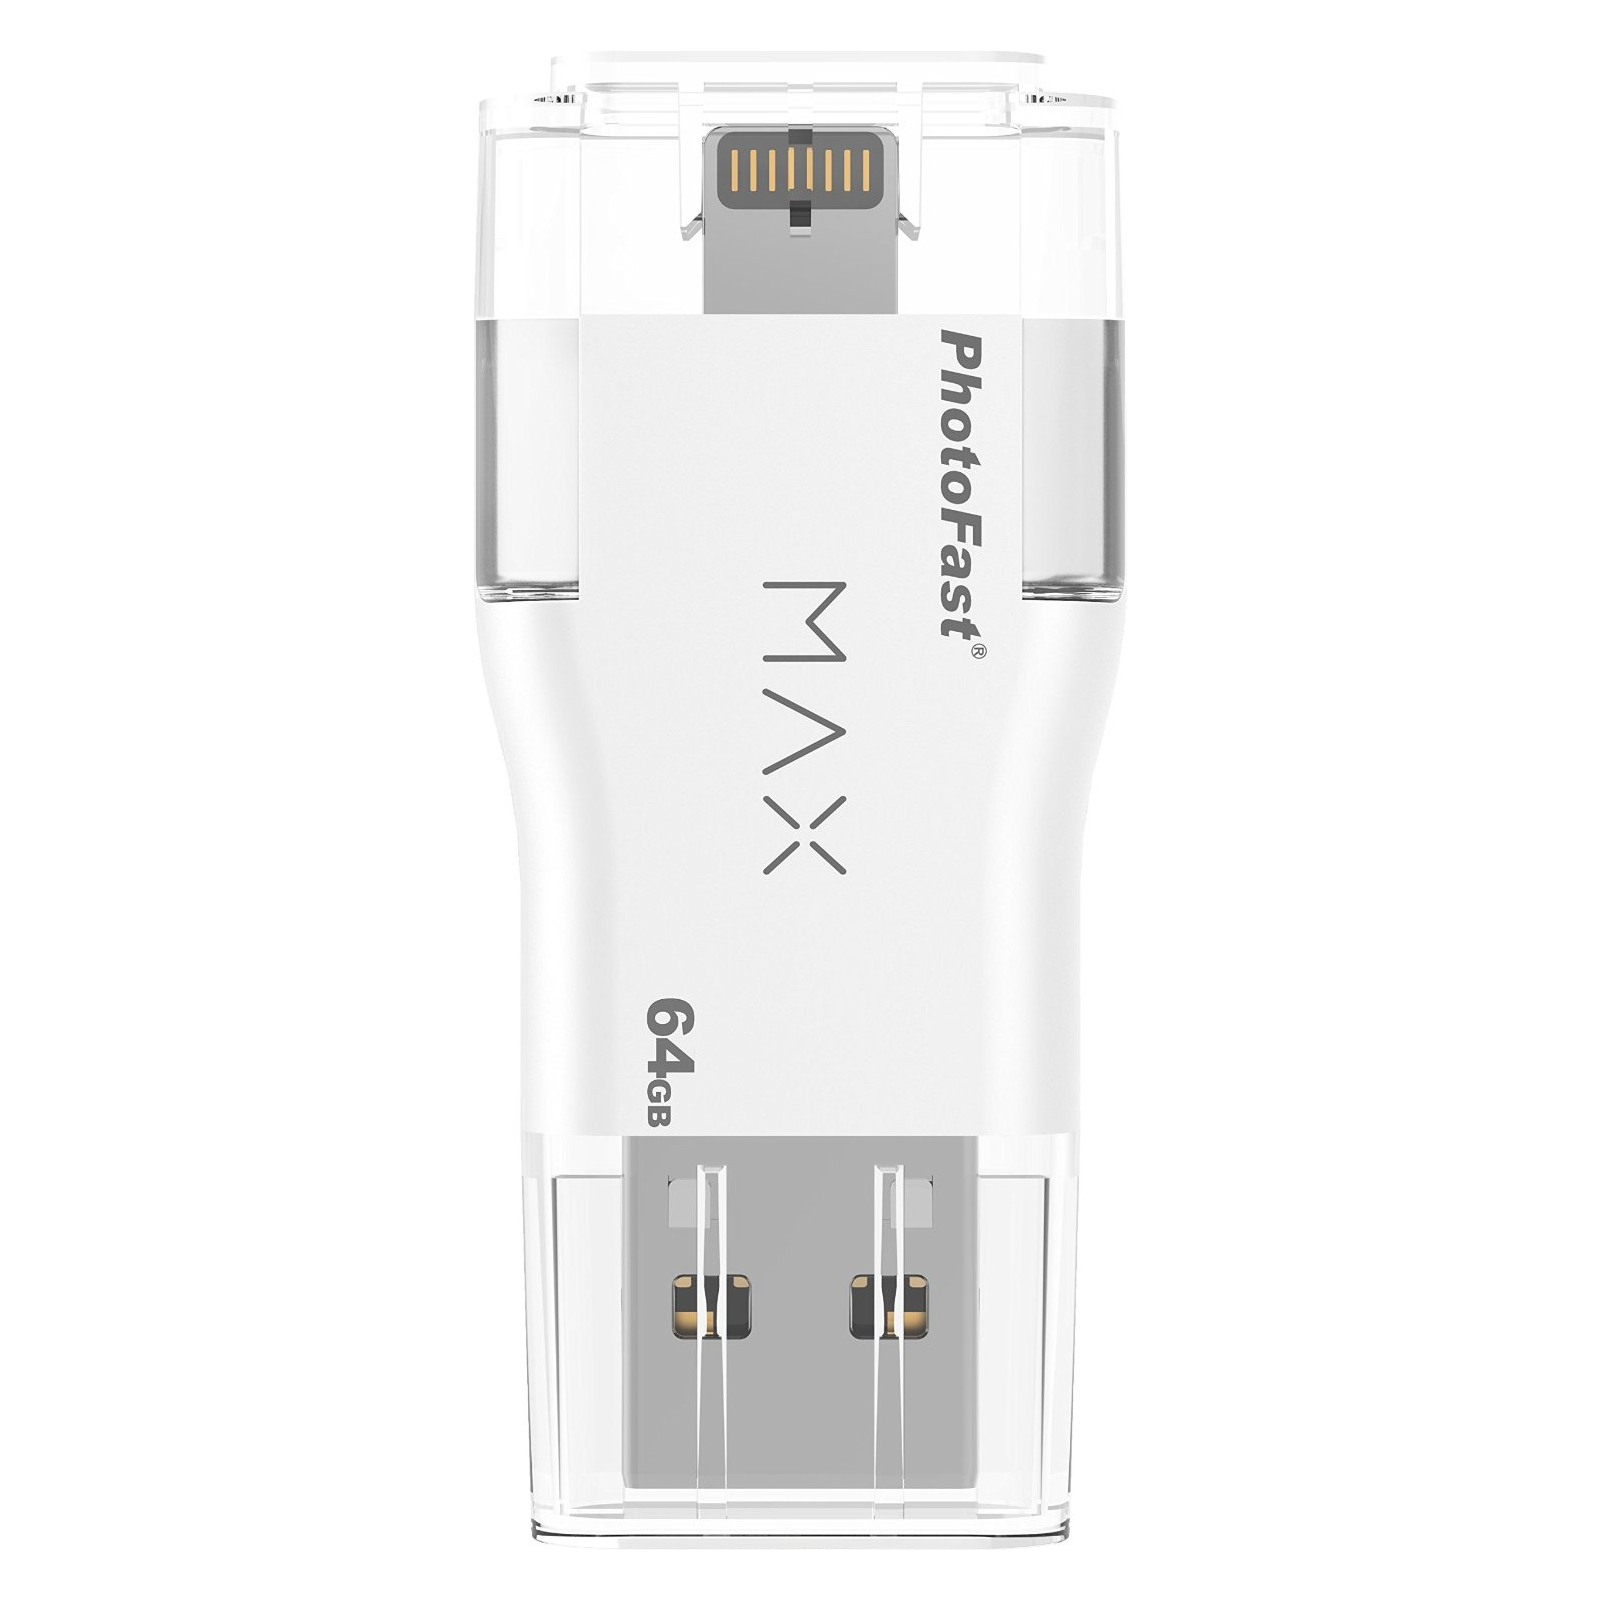 USB флеш накопитель PhotoFast 64GB i-Flashdrive MAX White USB/Lightning (IFDMAX64GB) изображение 2